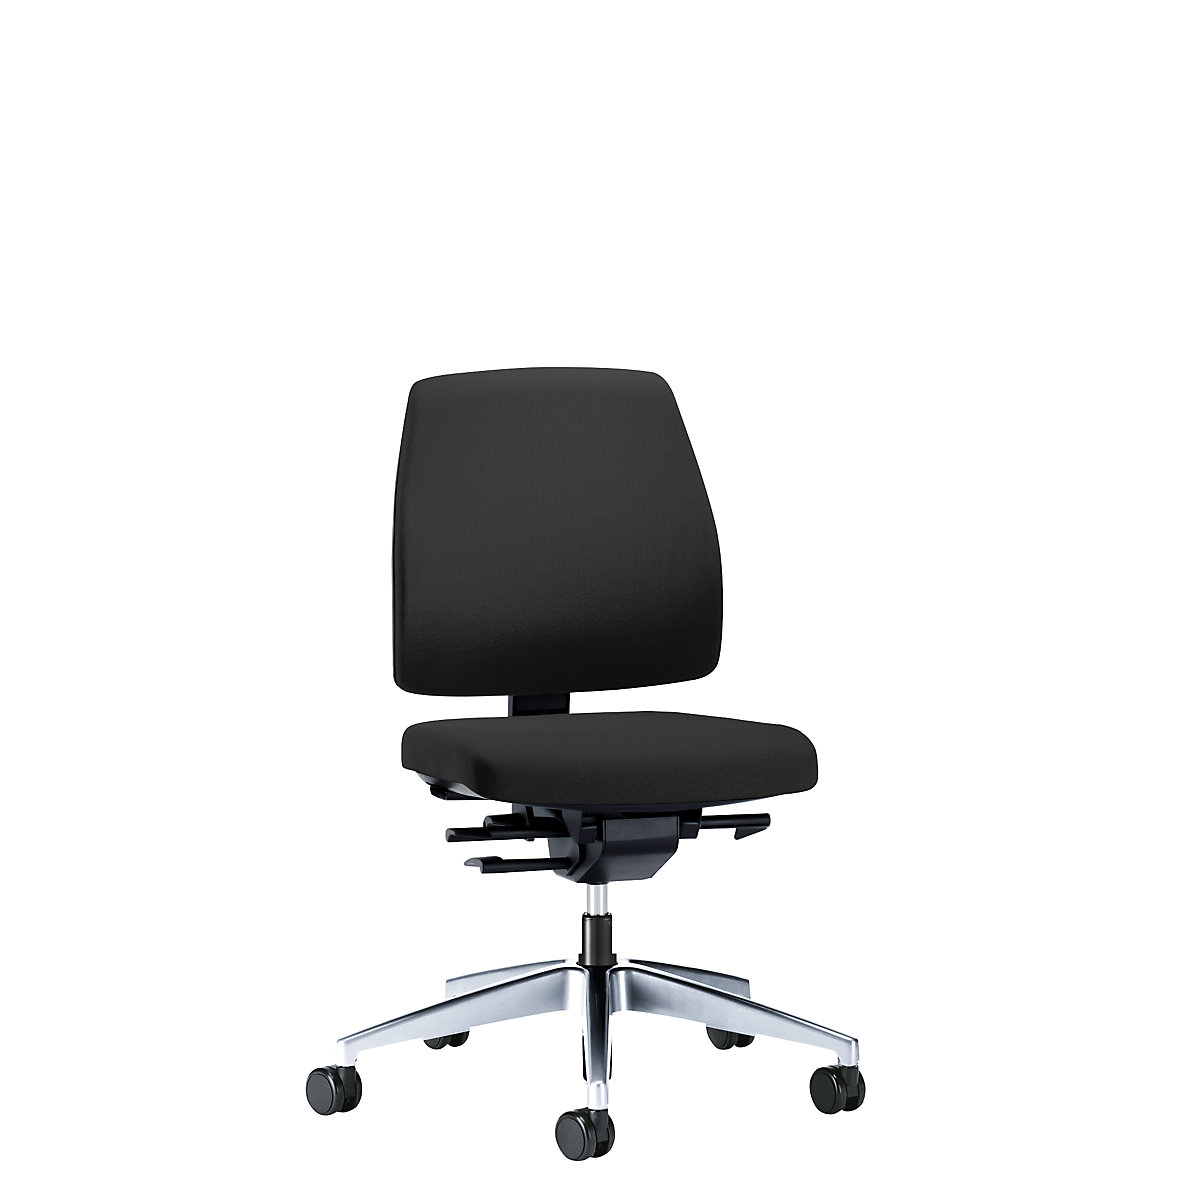 Bürodrehstuhl GOAL, Rückenlehnenhöhe 430 mm interstuhl, Gestell poliert, mit weichen Rollen, graphitschwarz, Sitztiefe 410 mm-3